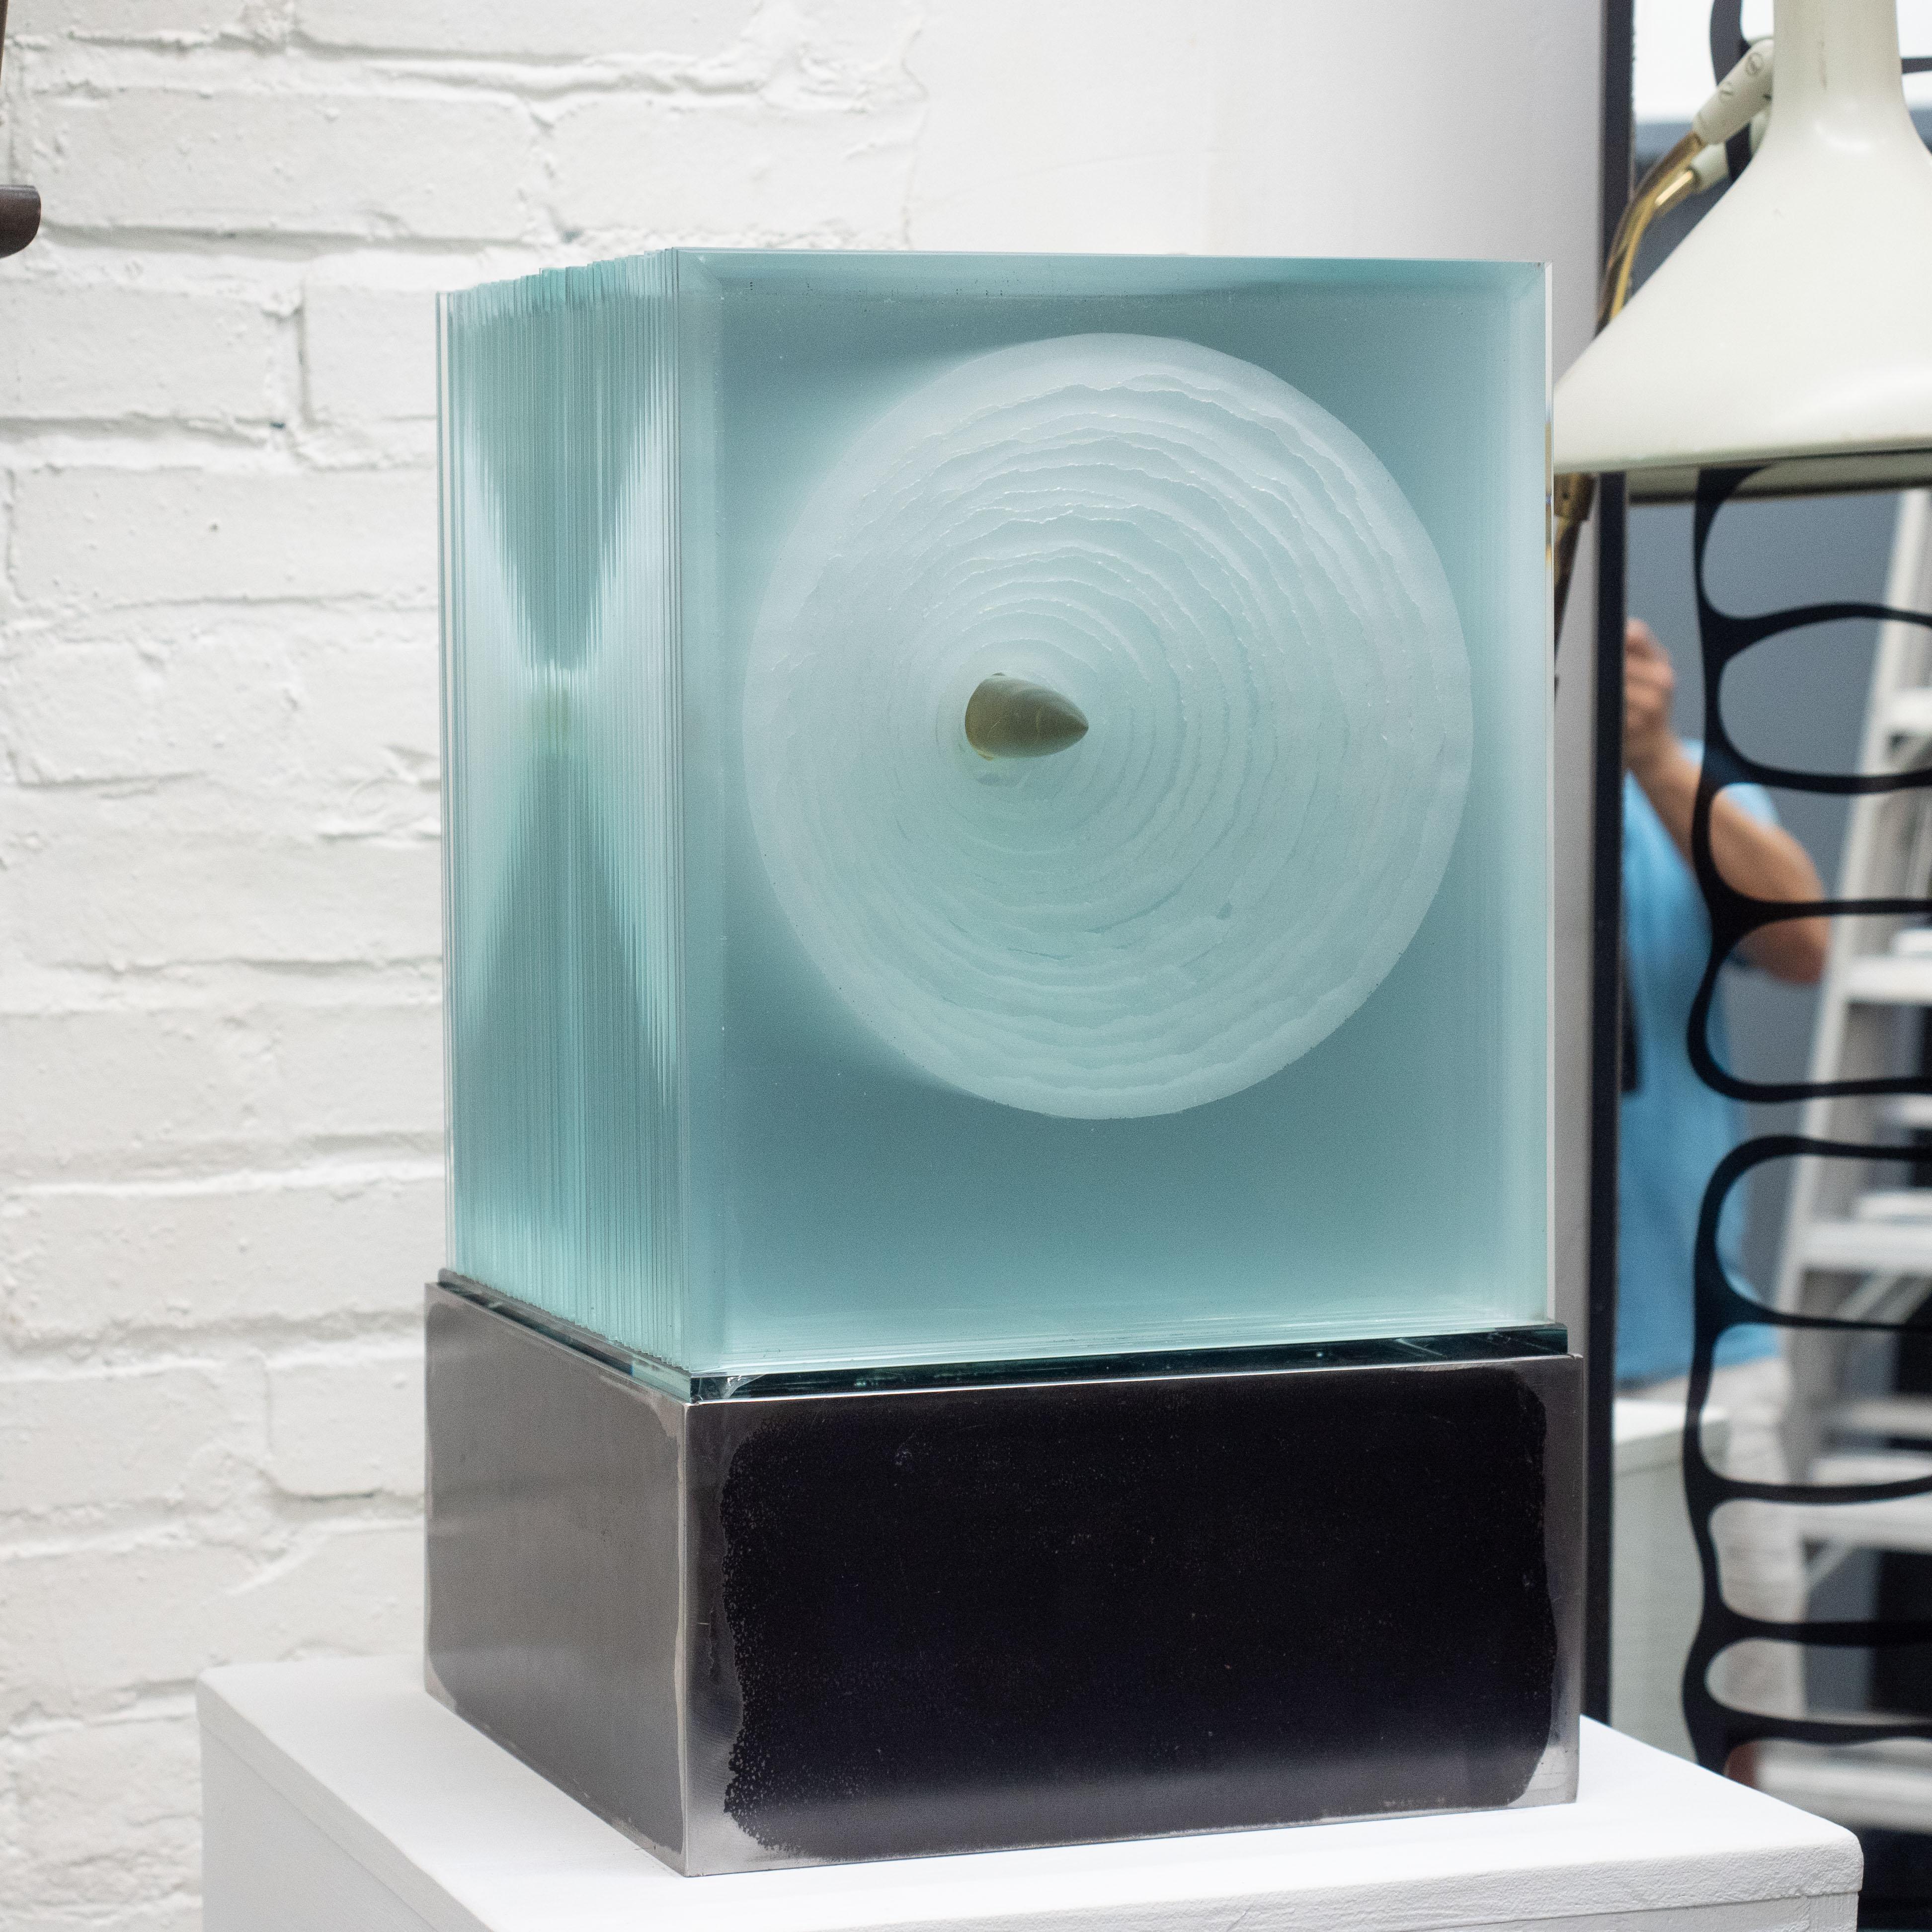 Sculpture cubique en verre sans titre de Jiri Jelinek. Composé de plusieurs dalles de verre compressées avec diverses techniques appliquées pour créer des effets visuels géométriques distincts selon les angles de vue. Éclairage par LED dans une base